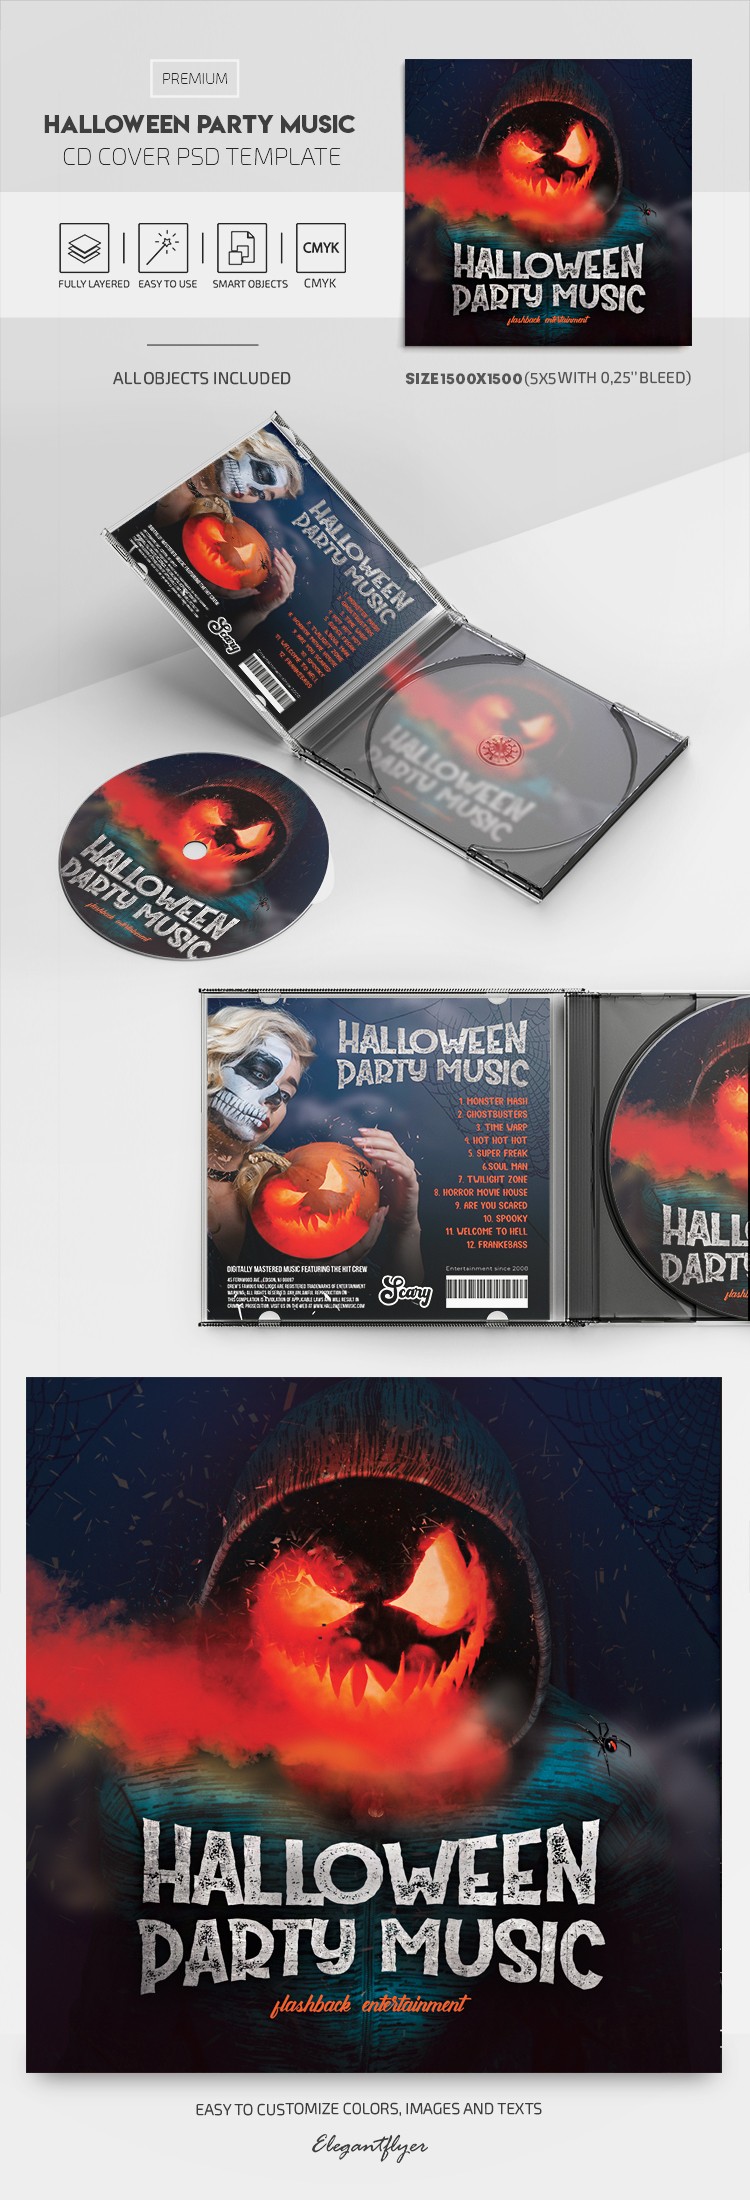 Copertina dell'album CD di musica per la festa di Halloween by ElegantFlyer